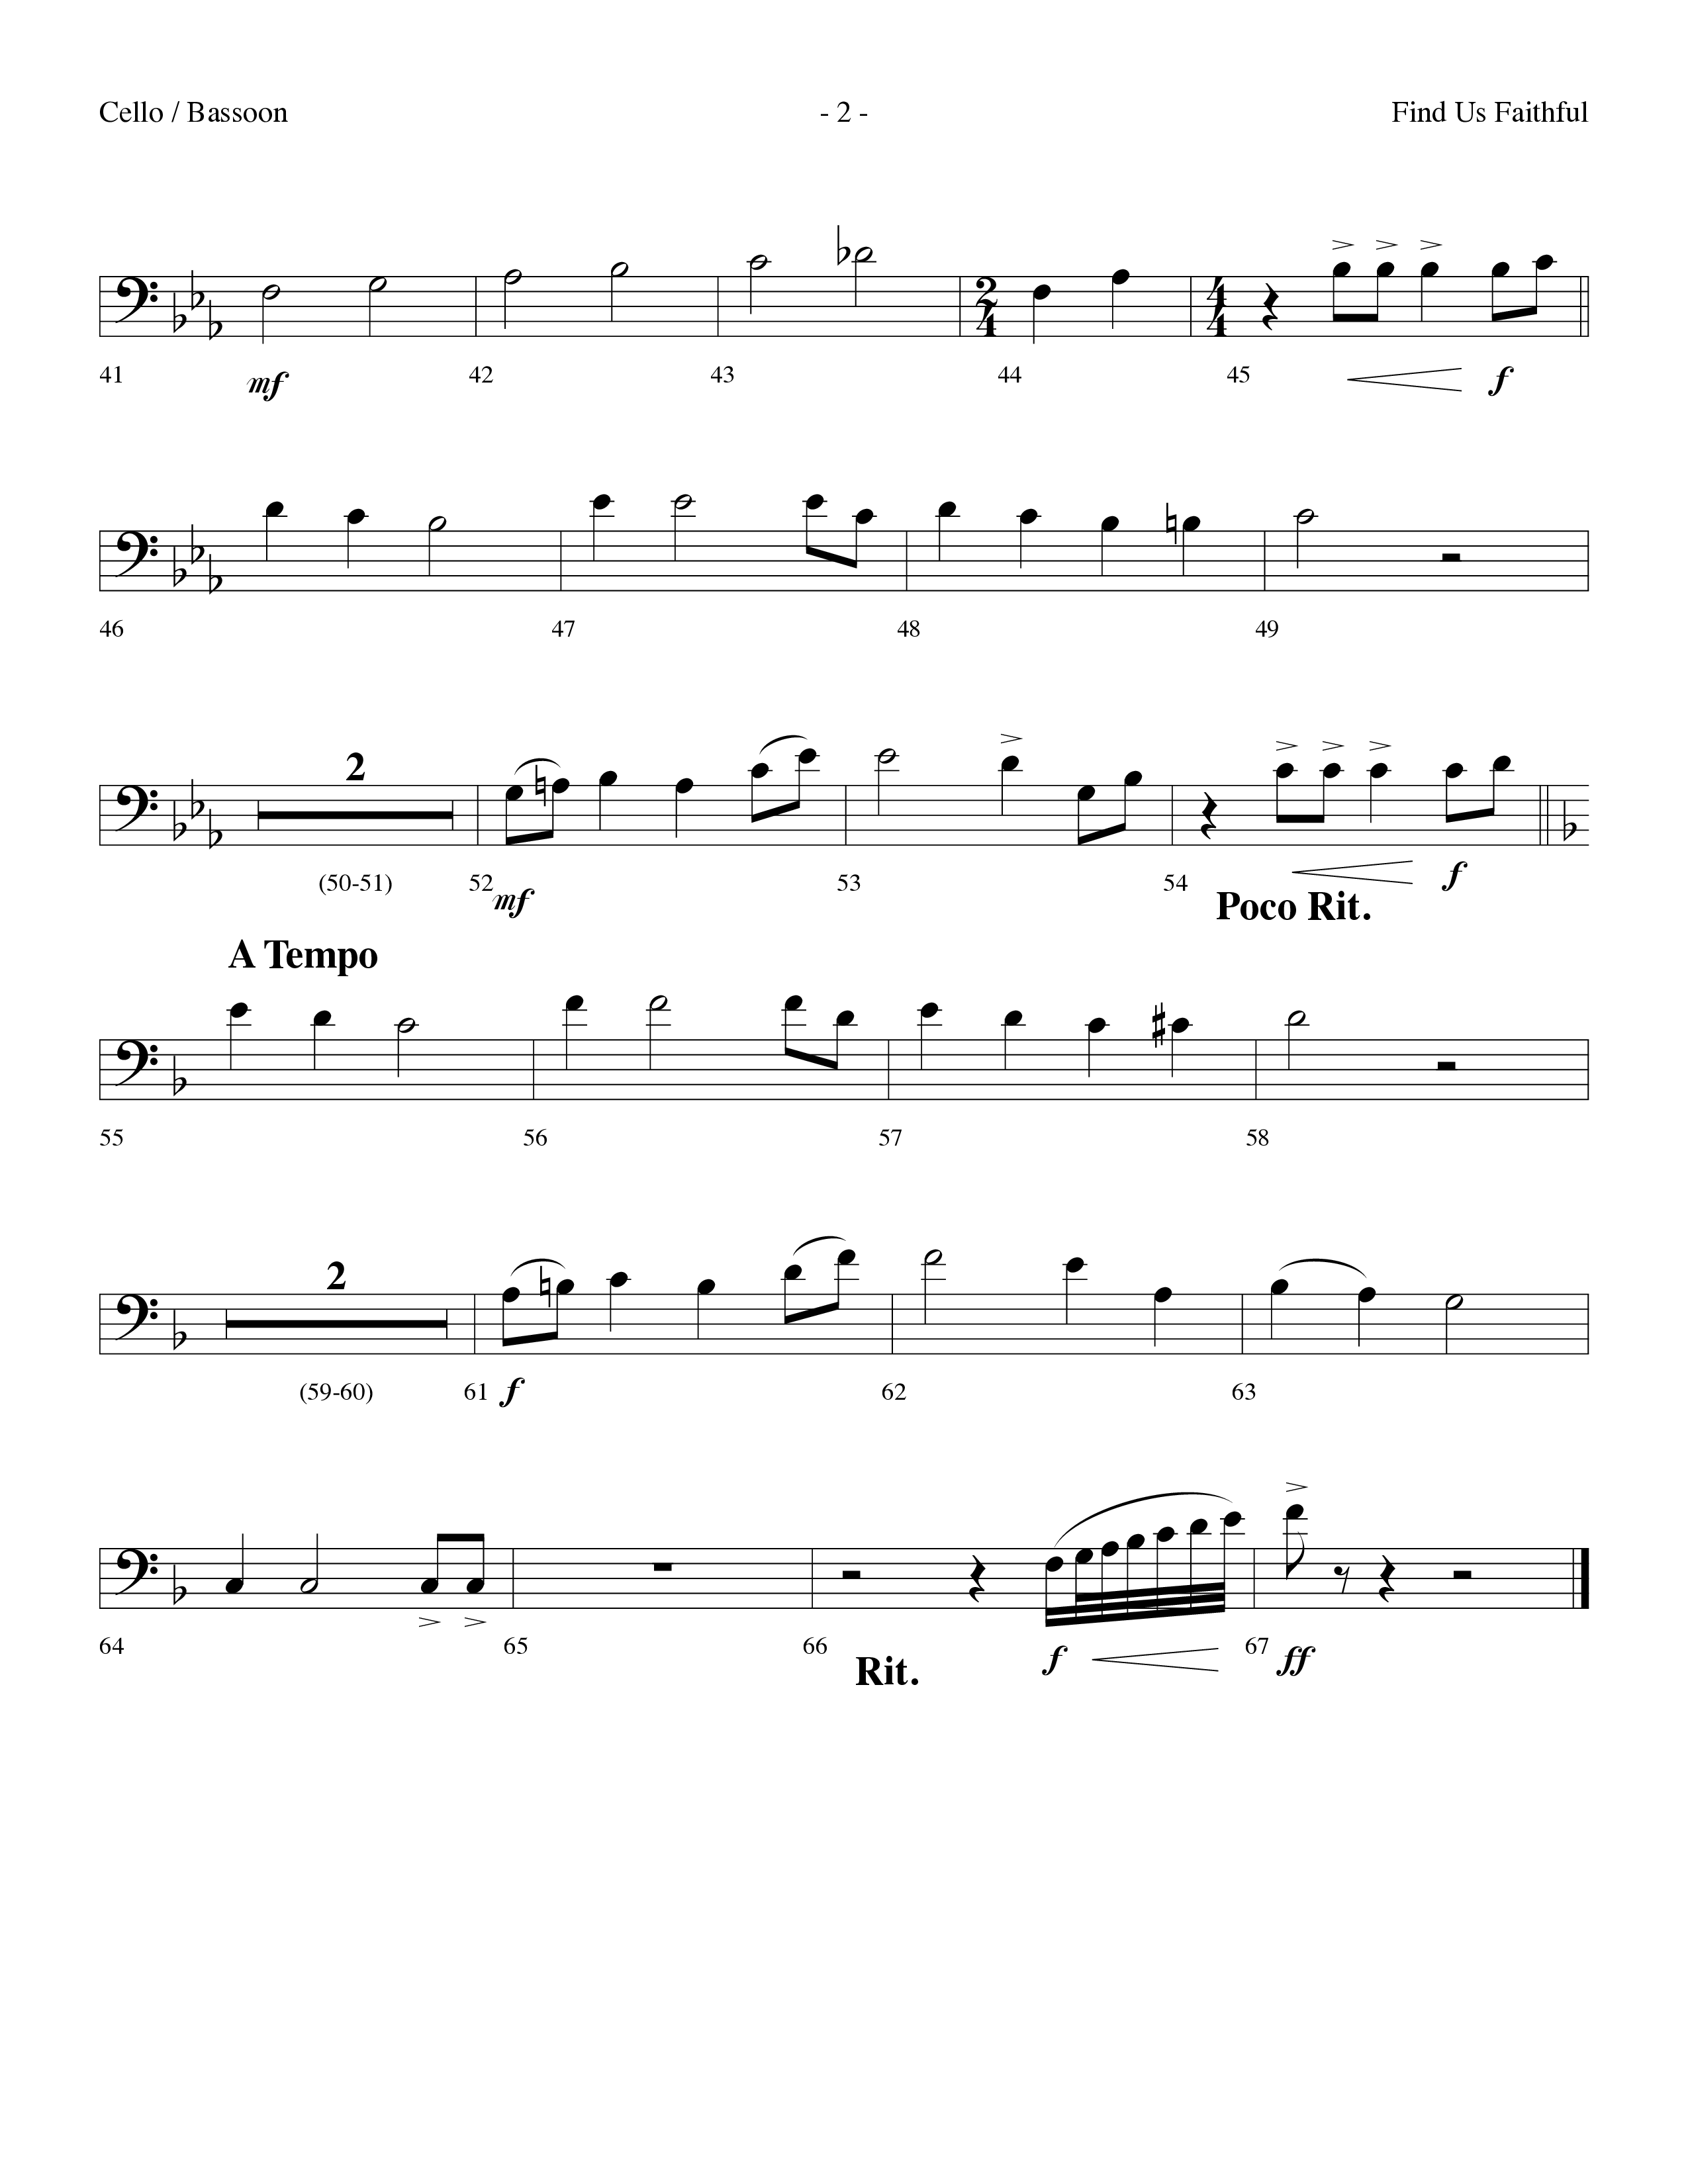 Find Us Faithful (Choral Anthem SATB) Cello (Lifeway Choral / Arr. Dennis Allen)